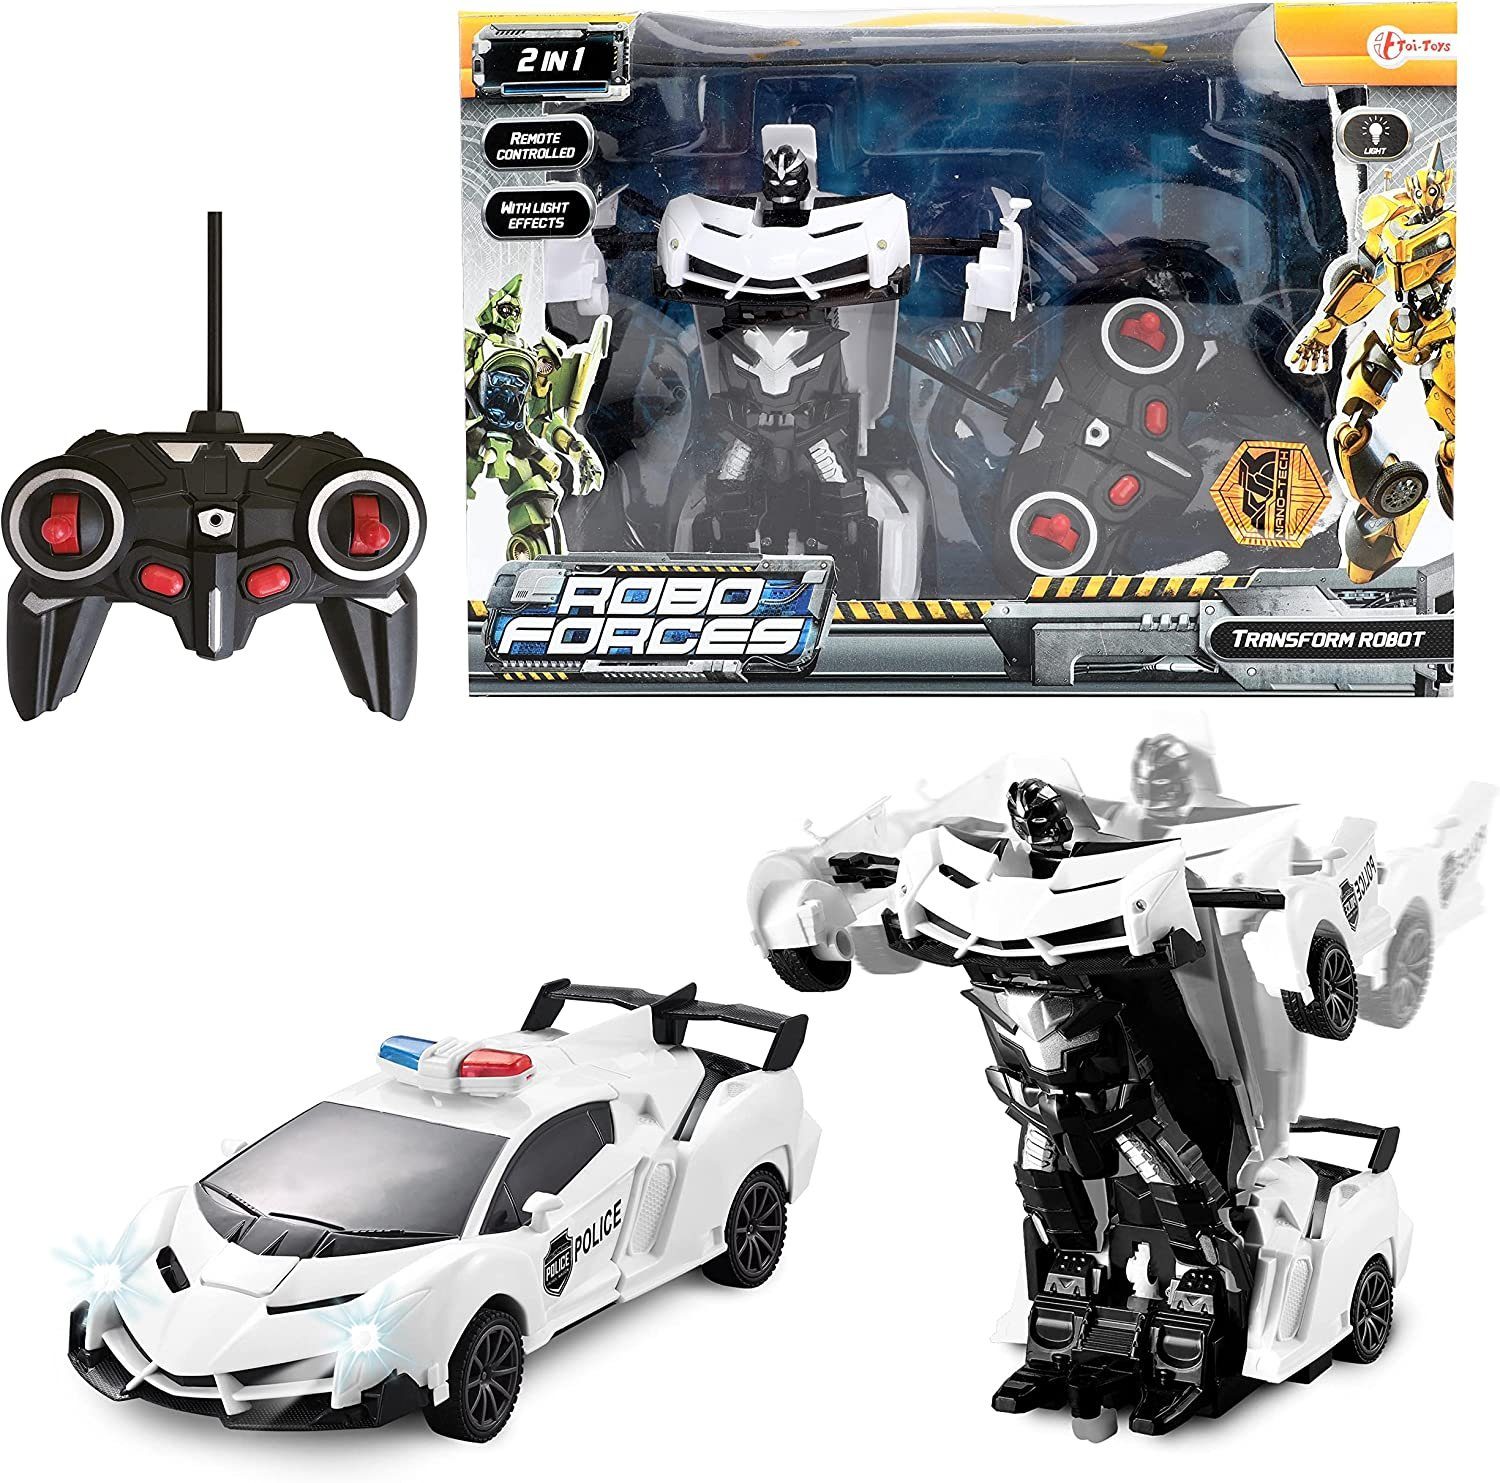 Toi-Toys Spielzeug-Auto Transform Roboter - Robo Forces, mit Licht & Fernsteuerung